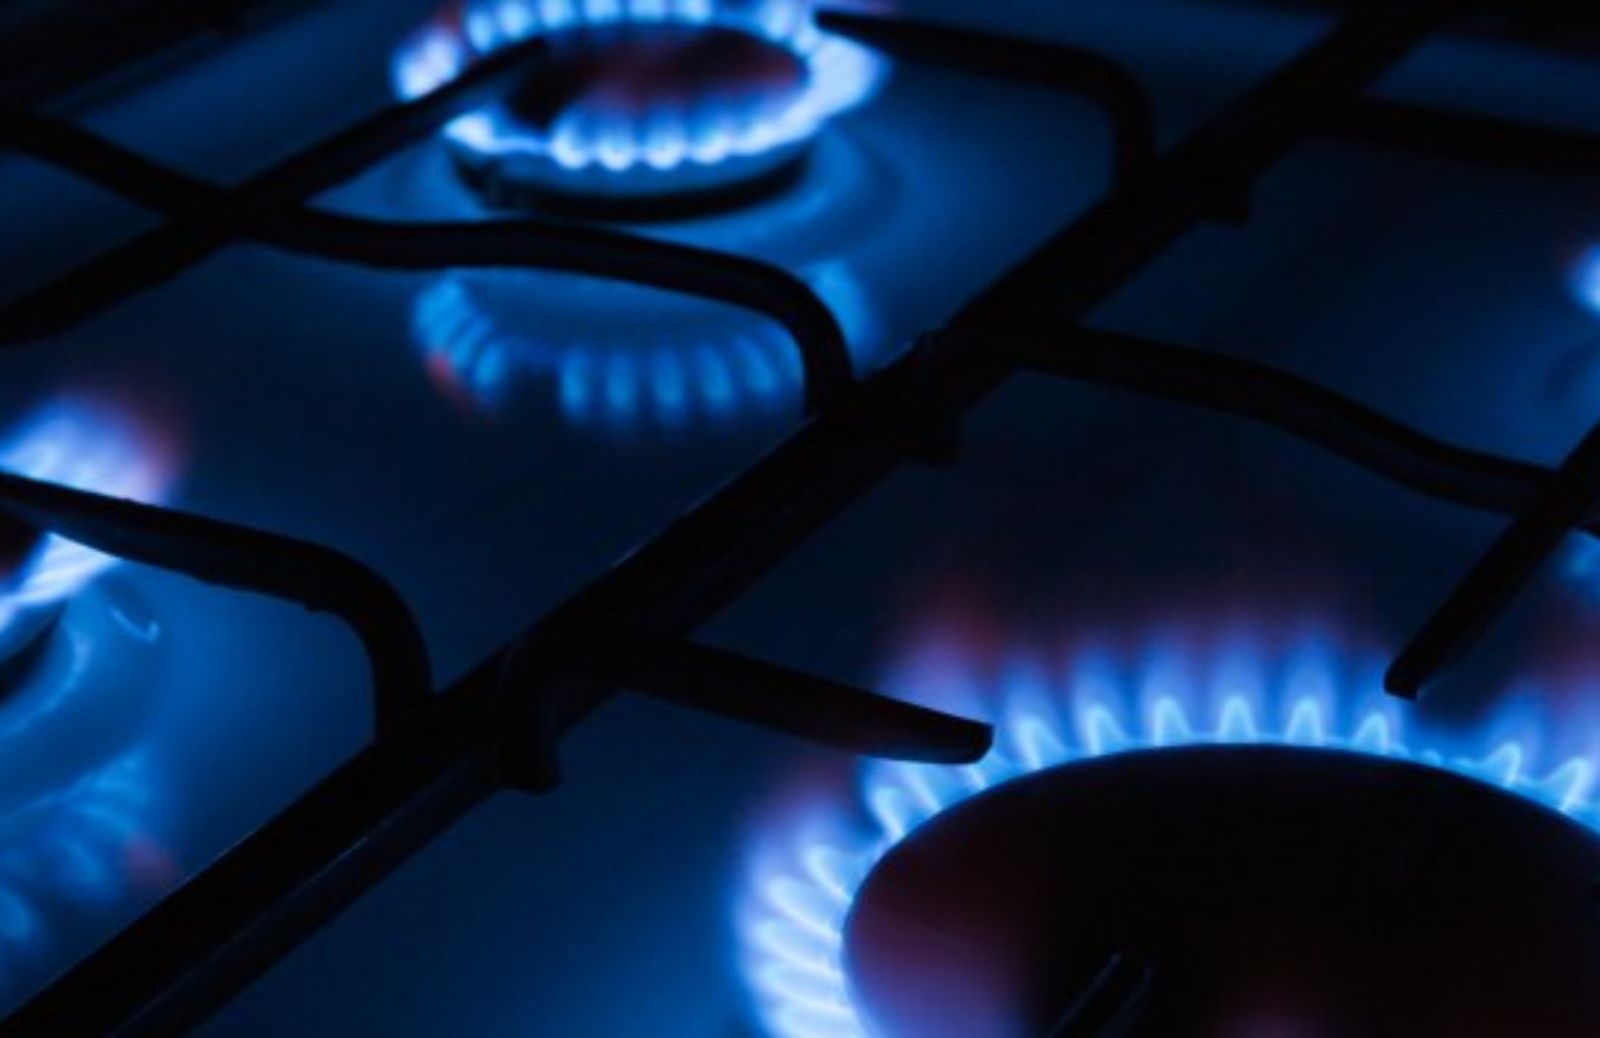 Fai da te: come utilizzare il gas in casa in modo sicuro